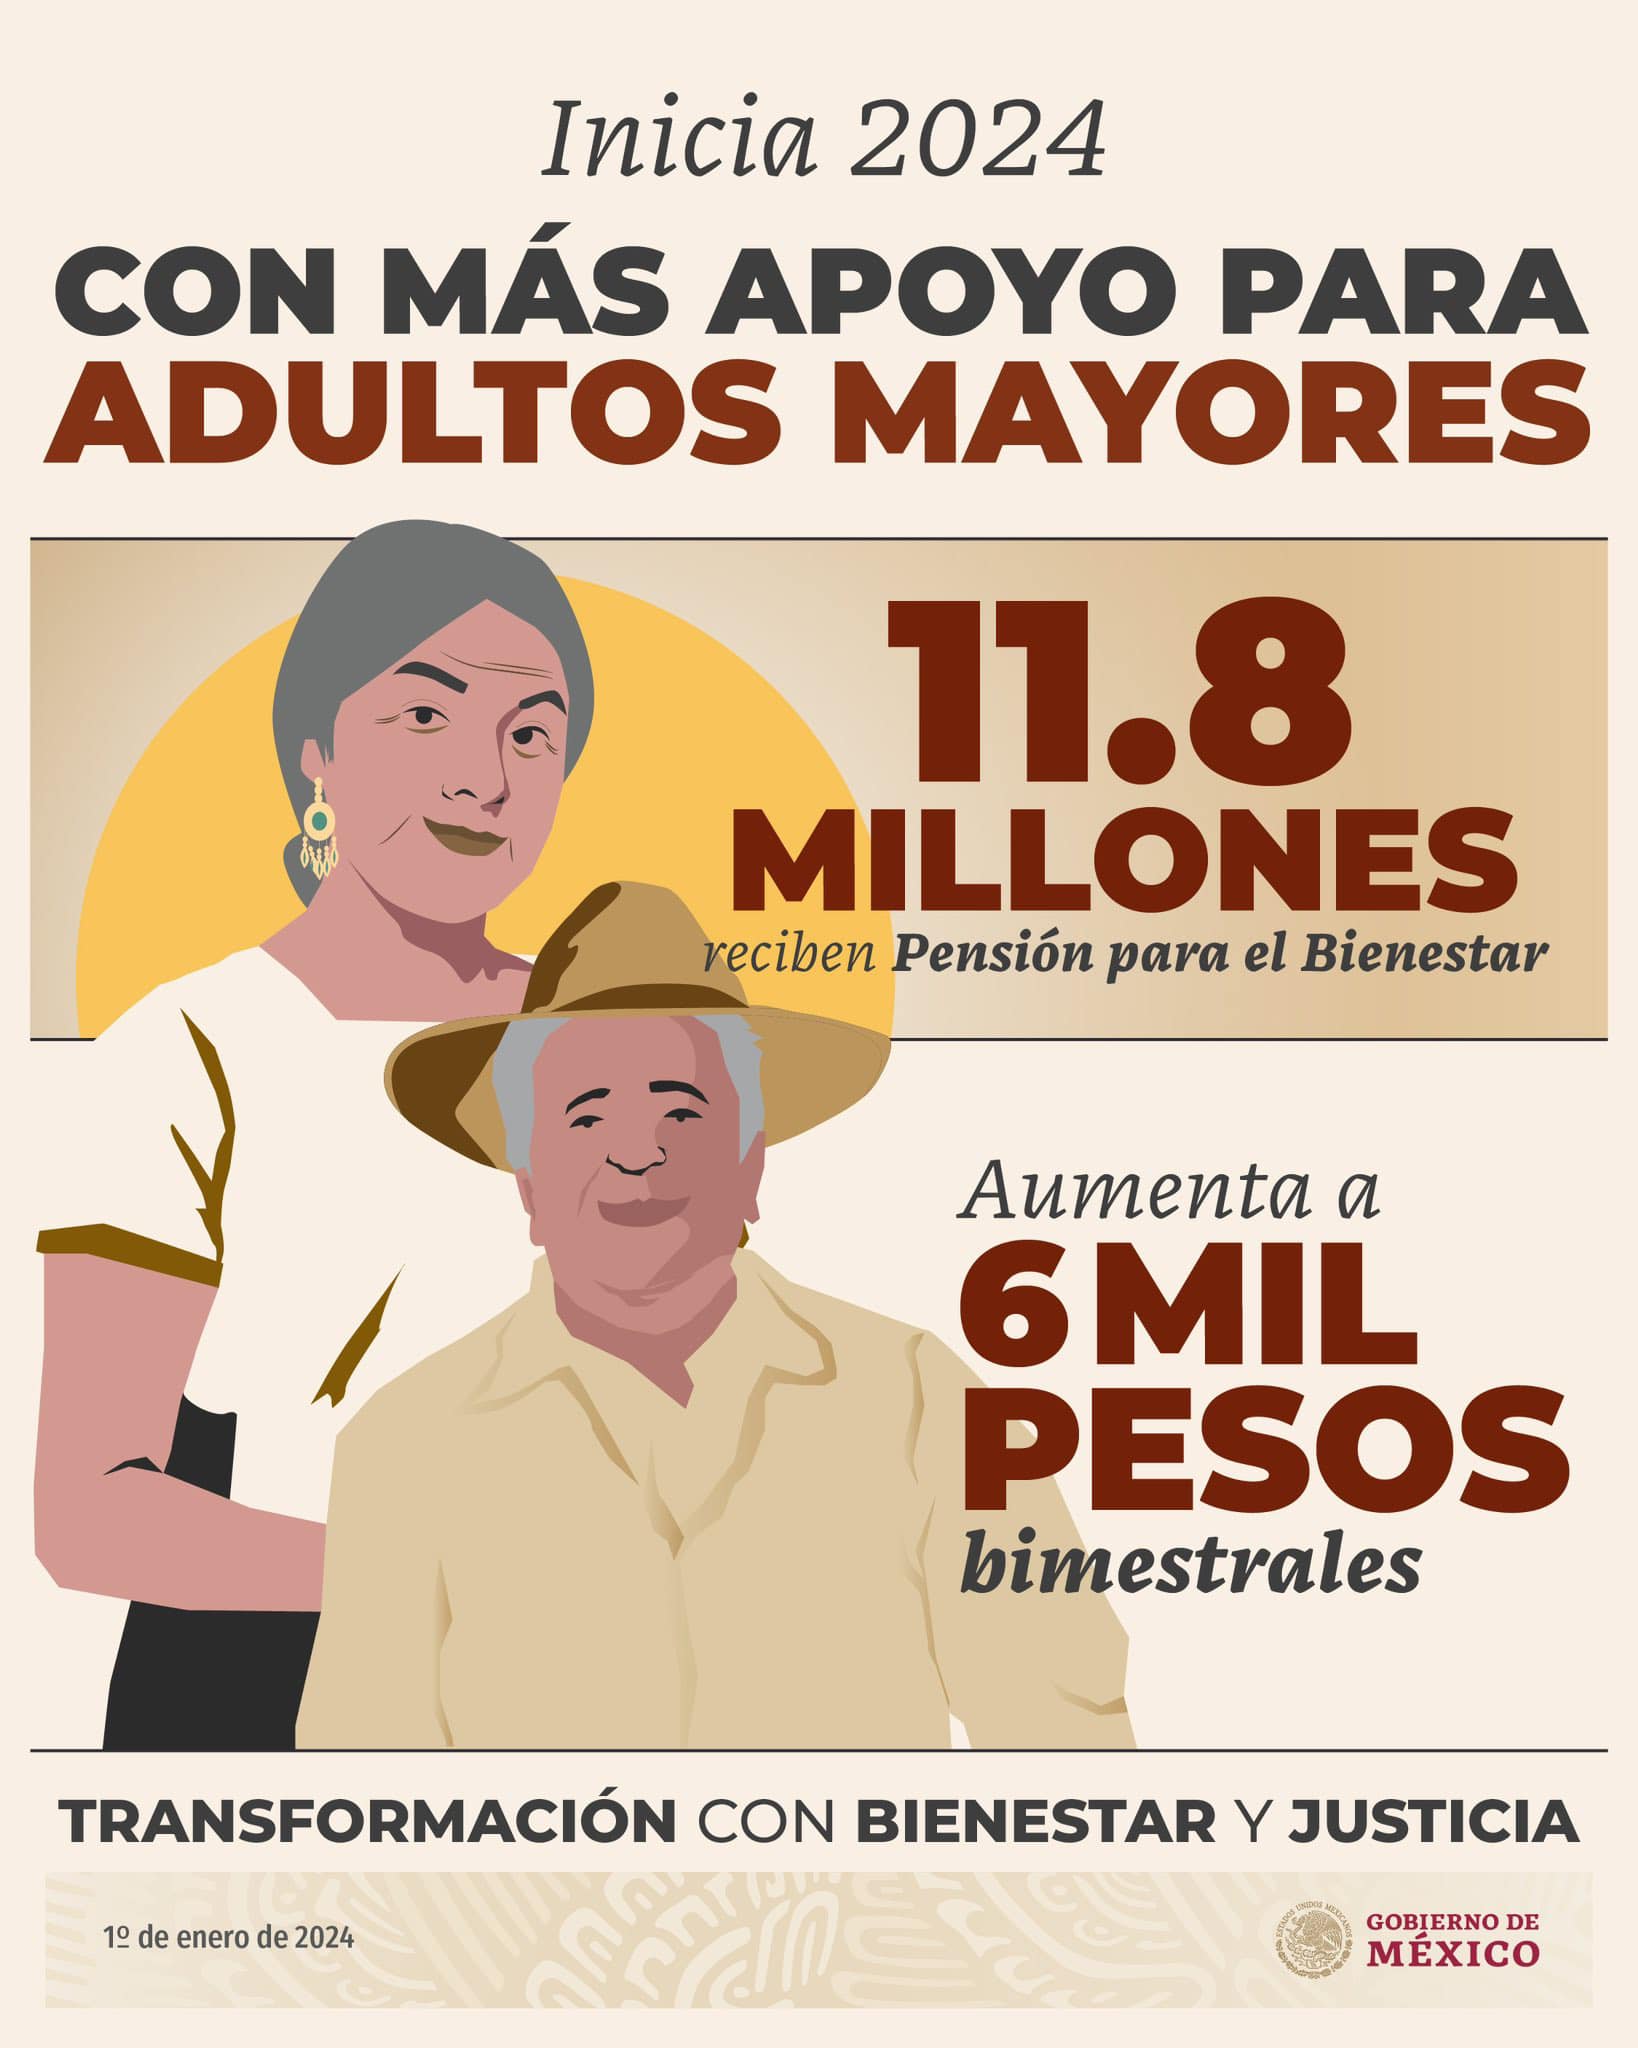 Pensión para adultos mayores aumenta a 6 mil pesos bimestrales